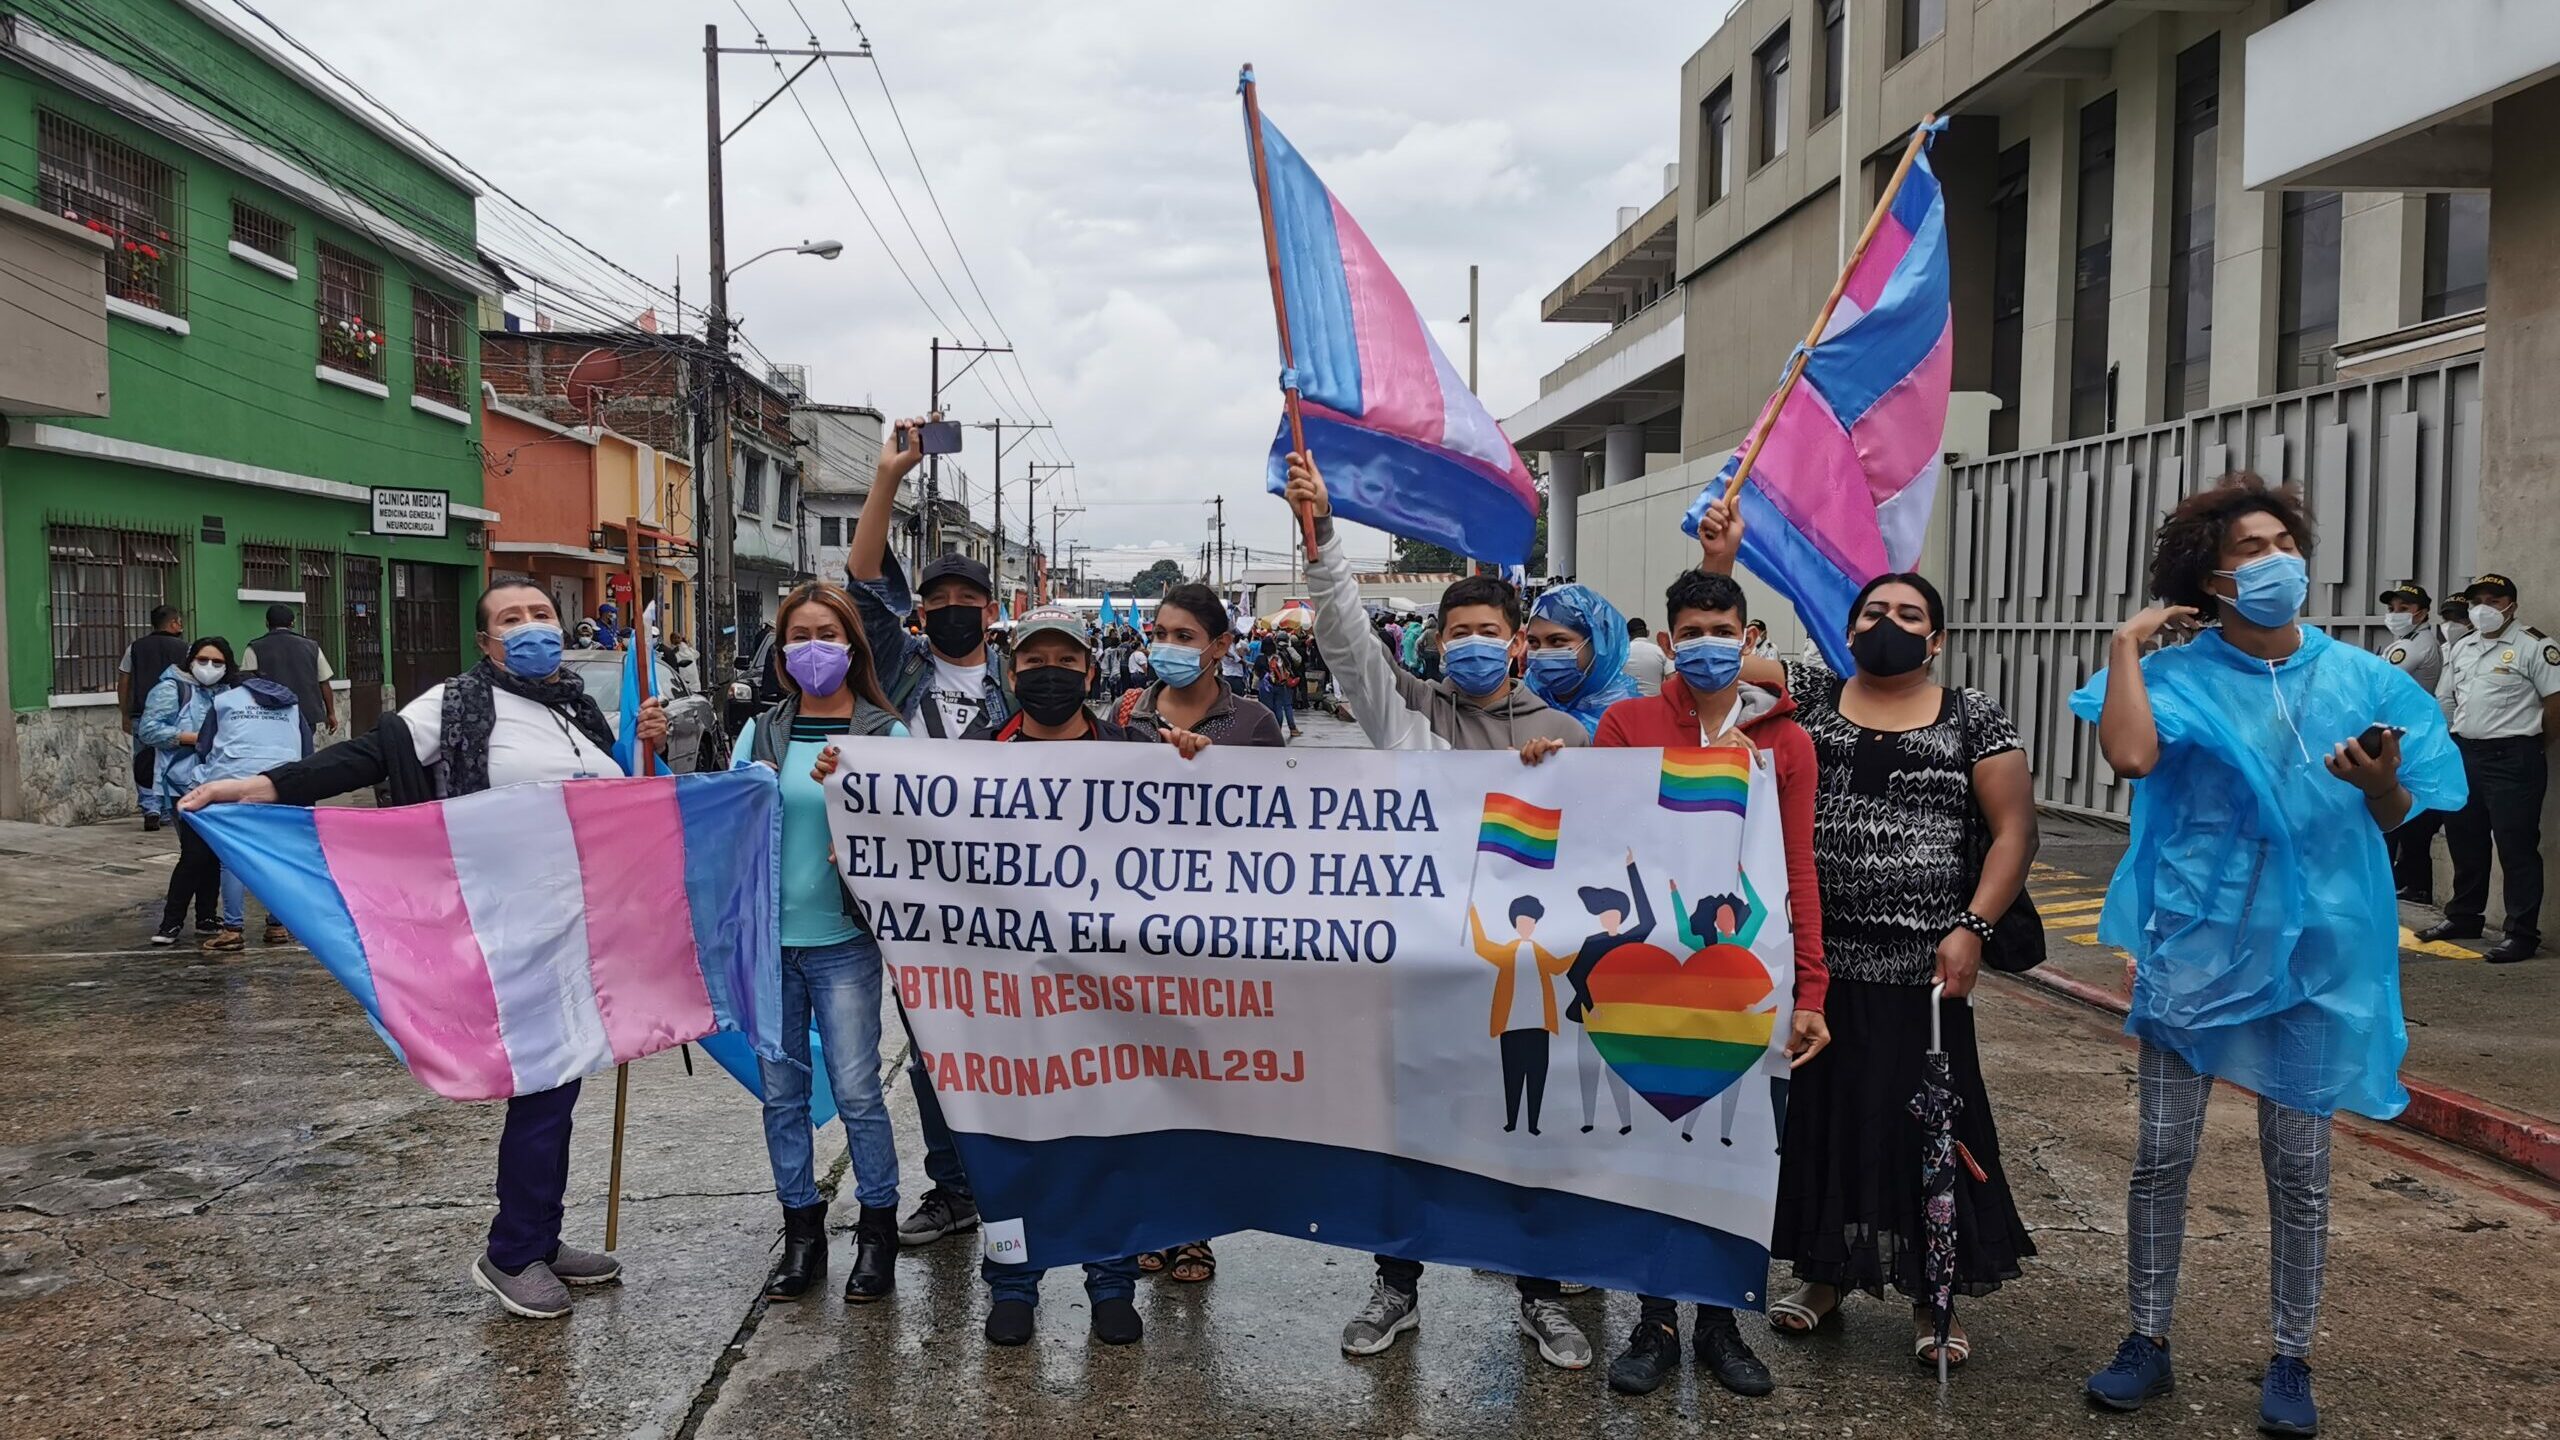 Demonstrierende tragen OP-Masken und halten ein Plakat auf dem "Si no hay justica para el pueblo, que no haya paz para el gobieno" steht. Außerdem werden drei blau-rosa-weiße Fahnen geschwenkt.